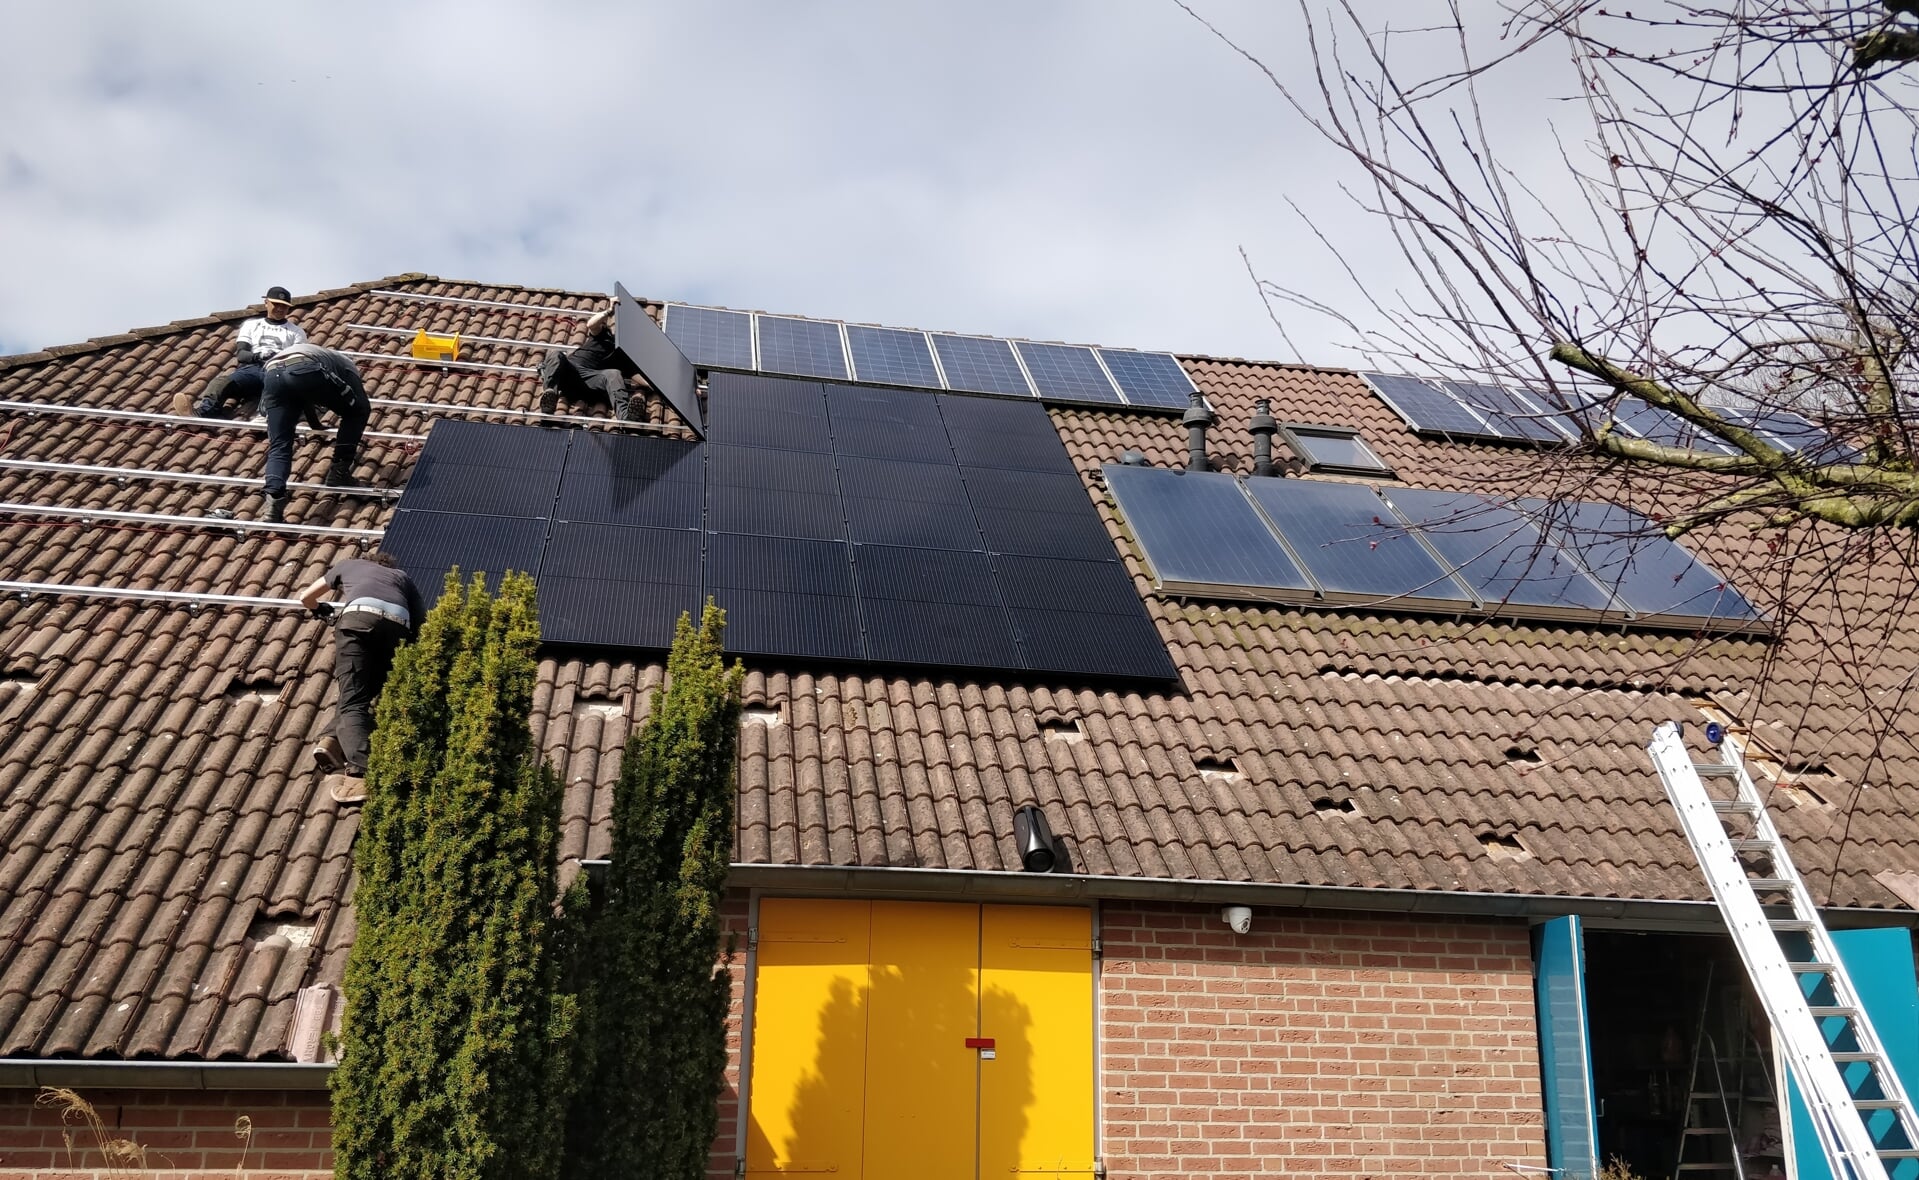 Scouting Boxtel legde twee jaar geleden haar pand aan de Molenwijkseweg al vol met zonnepanelen. Toen kon de vereniging hiervoor nog geen lening afsluiten bij de gemeente Boxtel. 